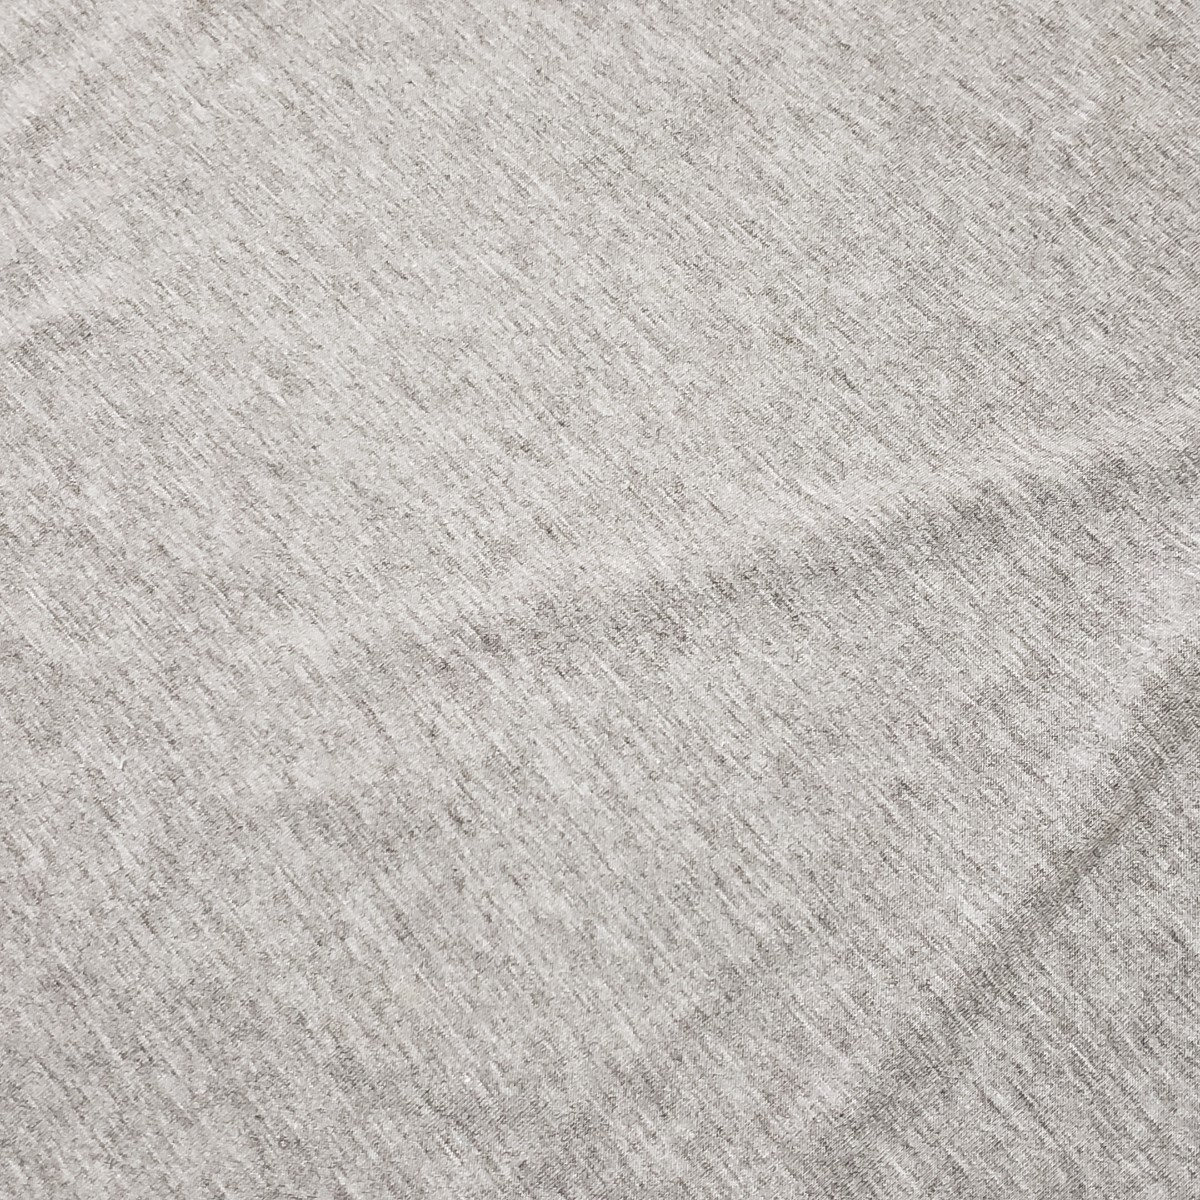 送料無料 状態良 長袖 ロング ワンピース Tシャツ生地 杢グレー Mサイズ 伸縮性あり ルームウエア ワンマイルウエア 春物 夏物の画像3